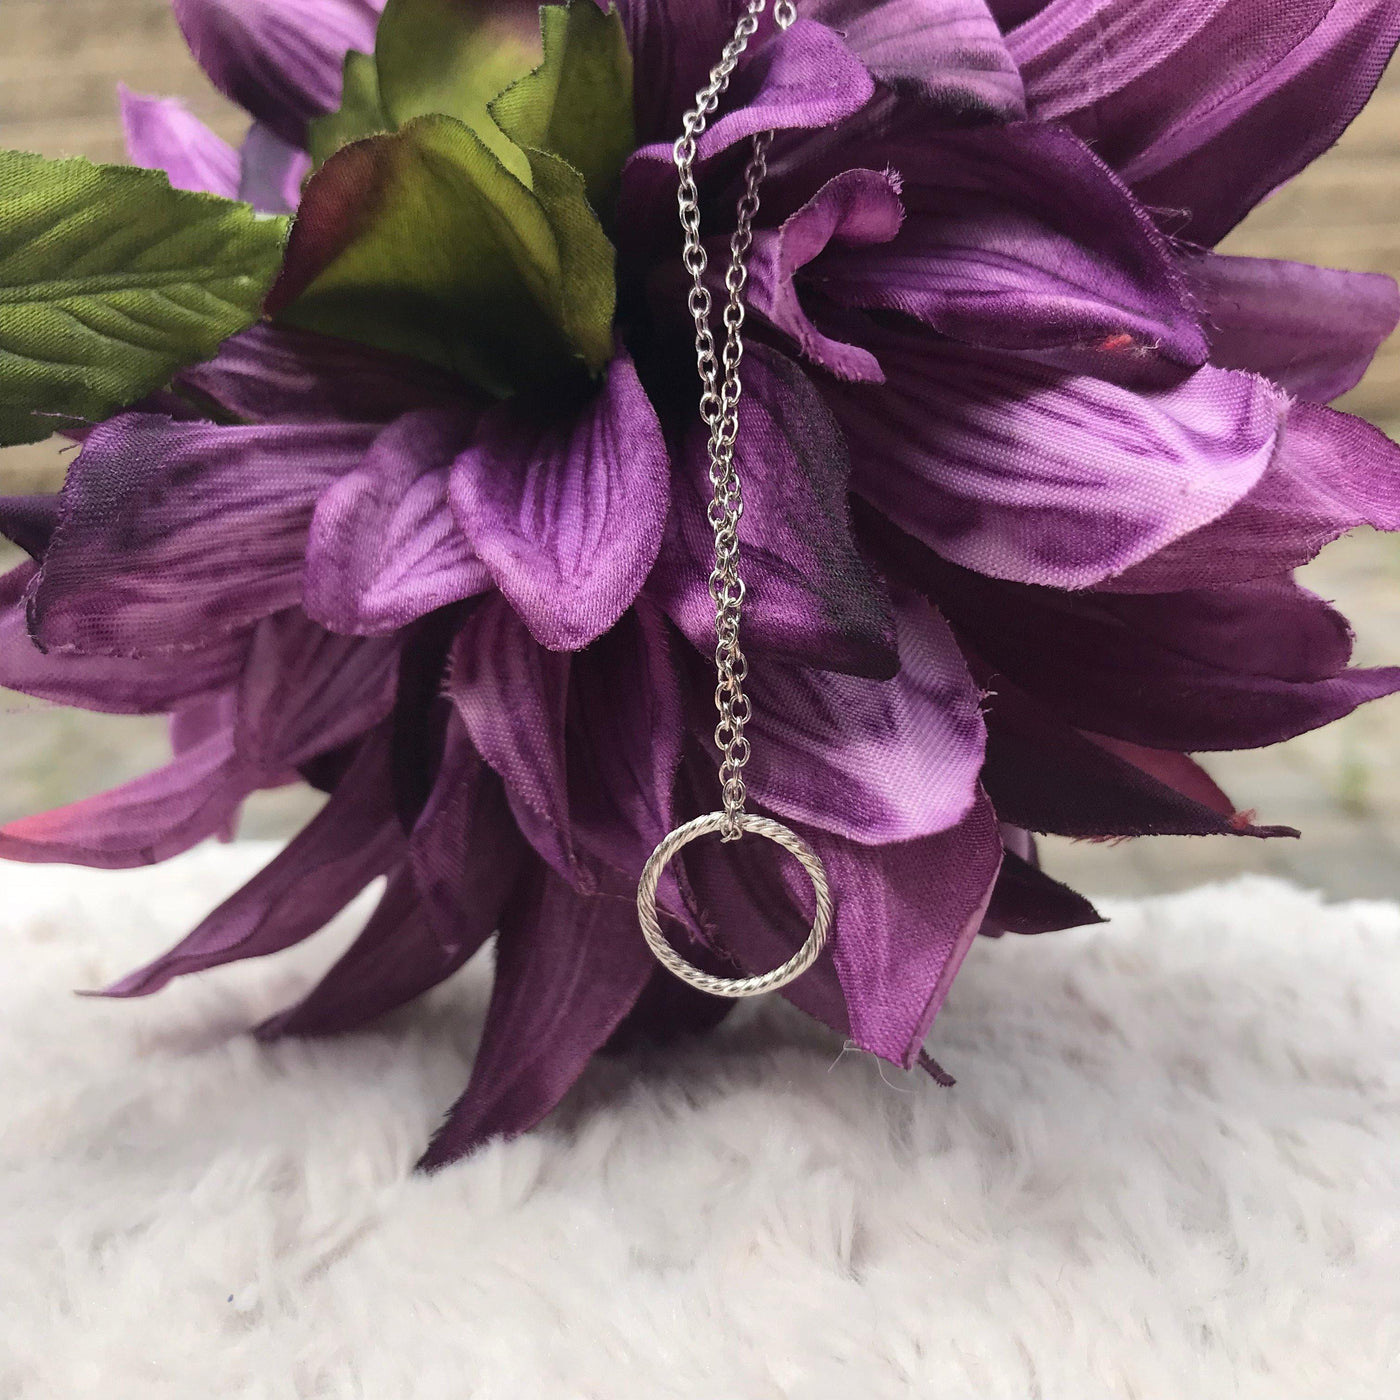 Silver Circle Necklace - Accessories - dalia + jade 